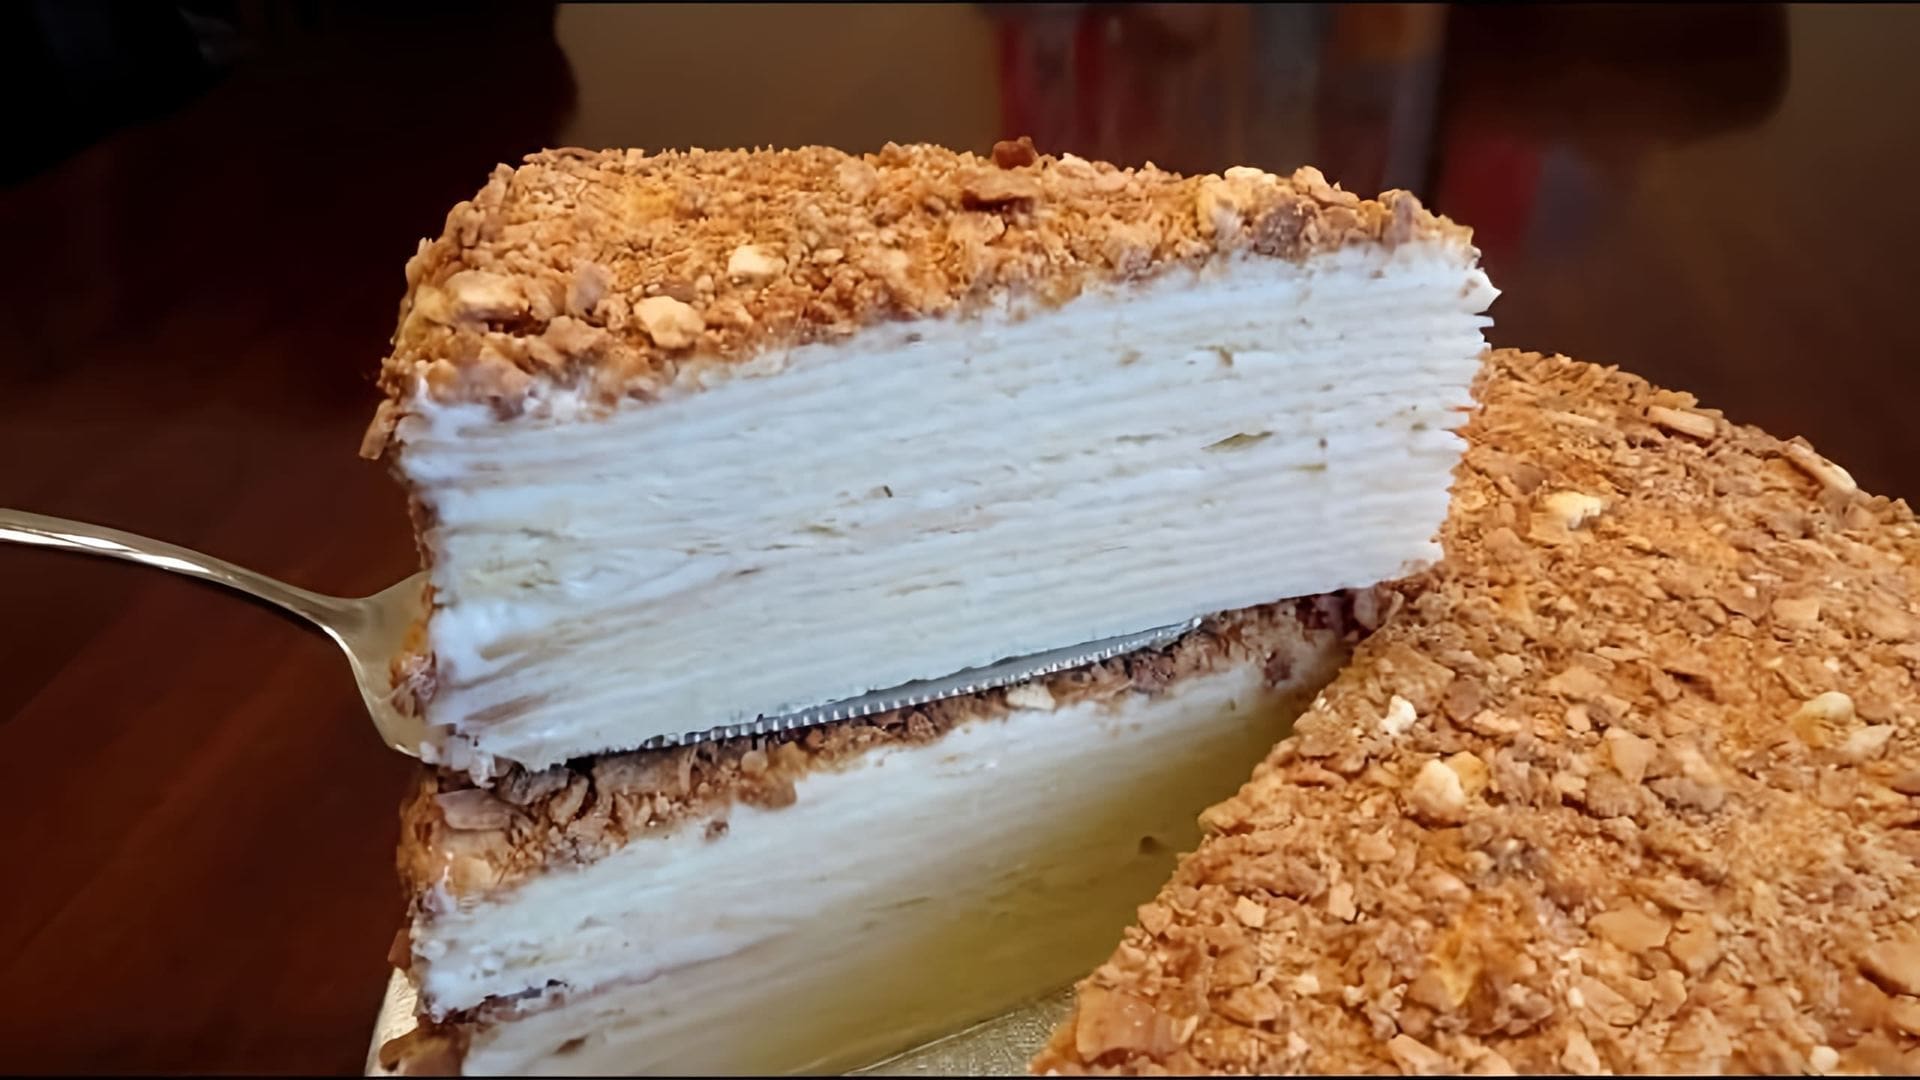 В этом видео демонстрируется процесс приготовления торта "Наполеон" по школьному рецепту